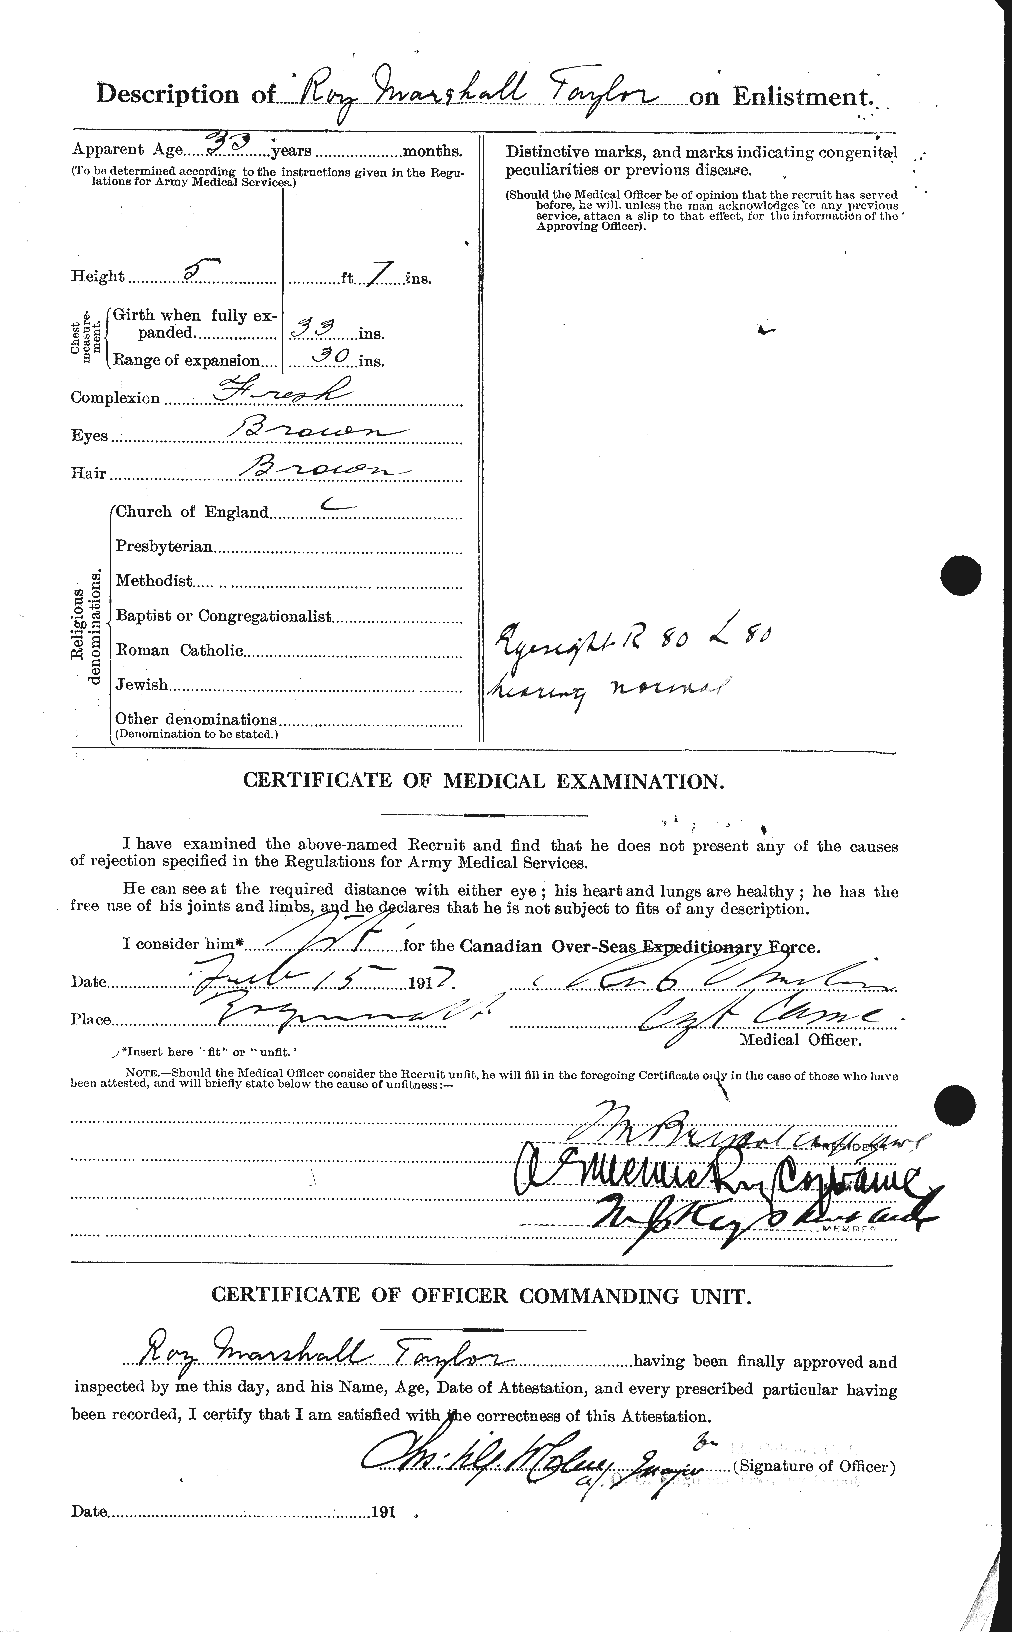 Dossiers du Personnel de la Première Guerre mondiale - CEC 627532b